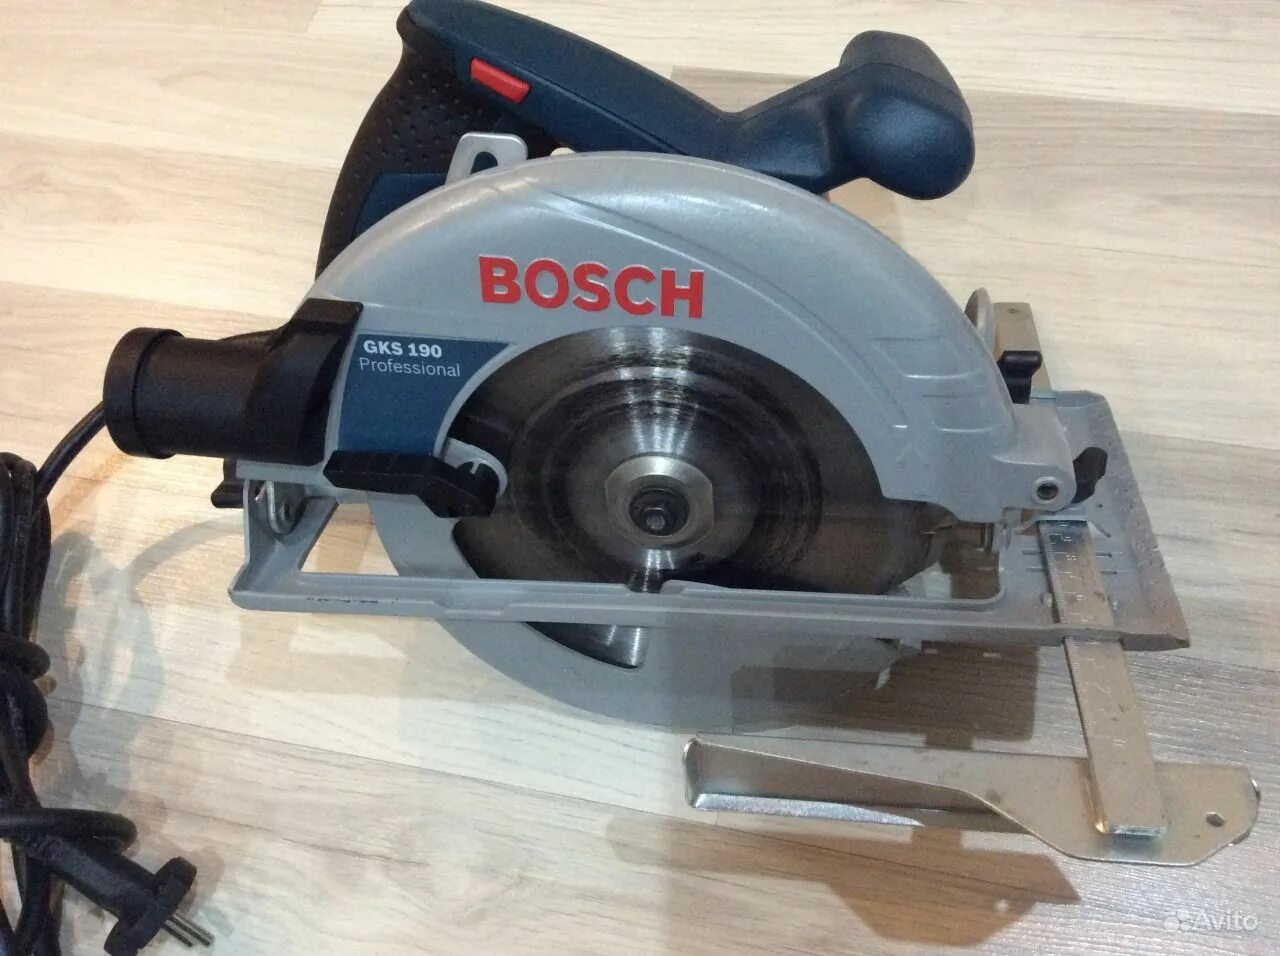 Bosch 190 купить. Bosch GKS 190. Bosch 190 GKS циркулярка. Церкулярная пила "Bosch" GKS 190. Bosch GKS 190, 1400 Вт.